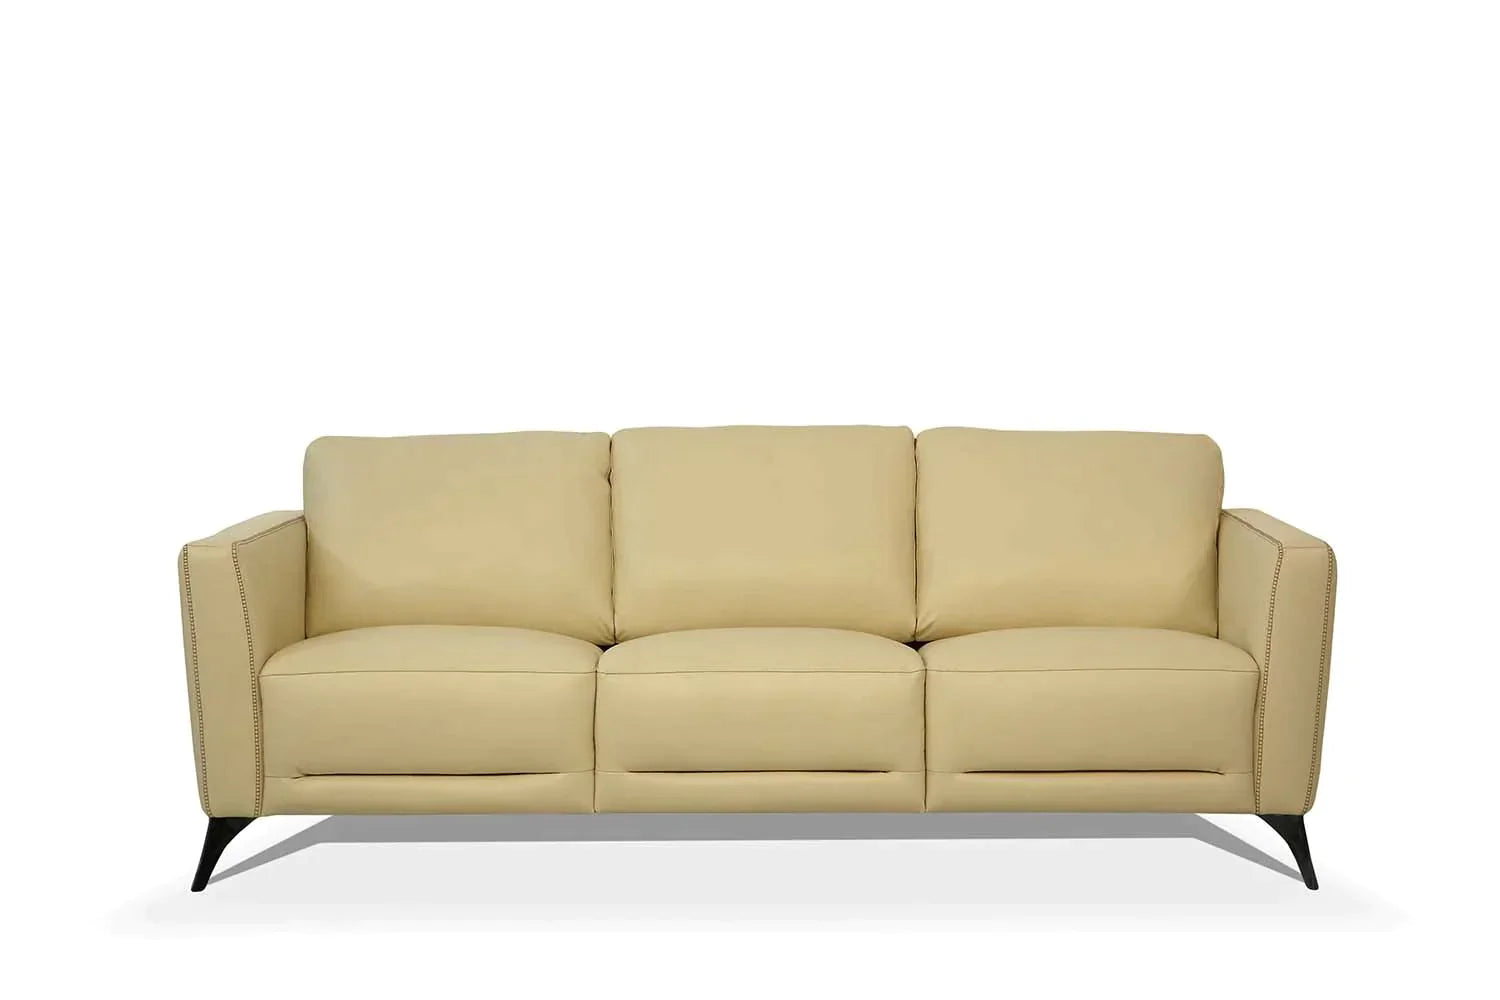 Malaga Cream Leather Sofa Model 55005 By ACME Furniture